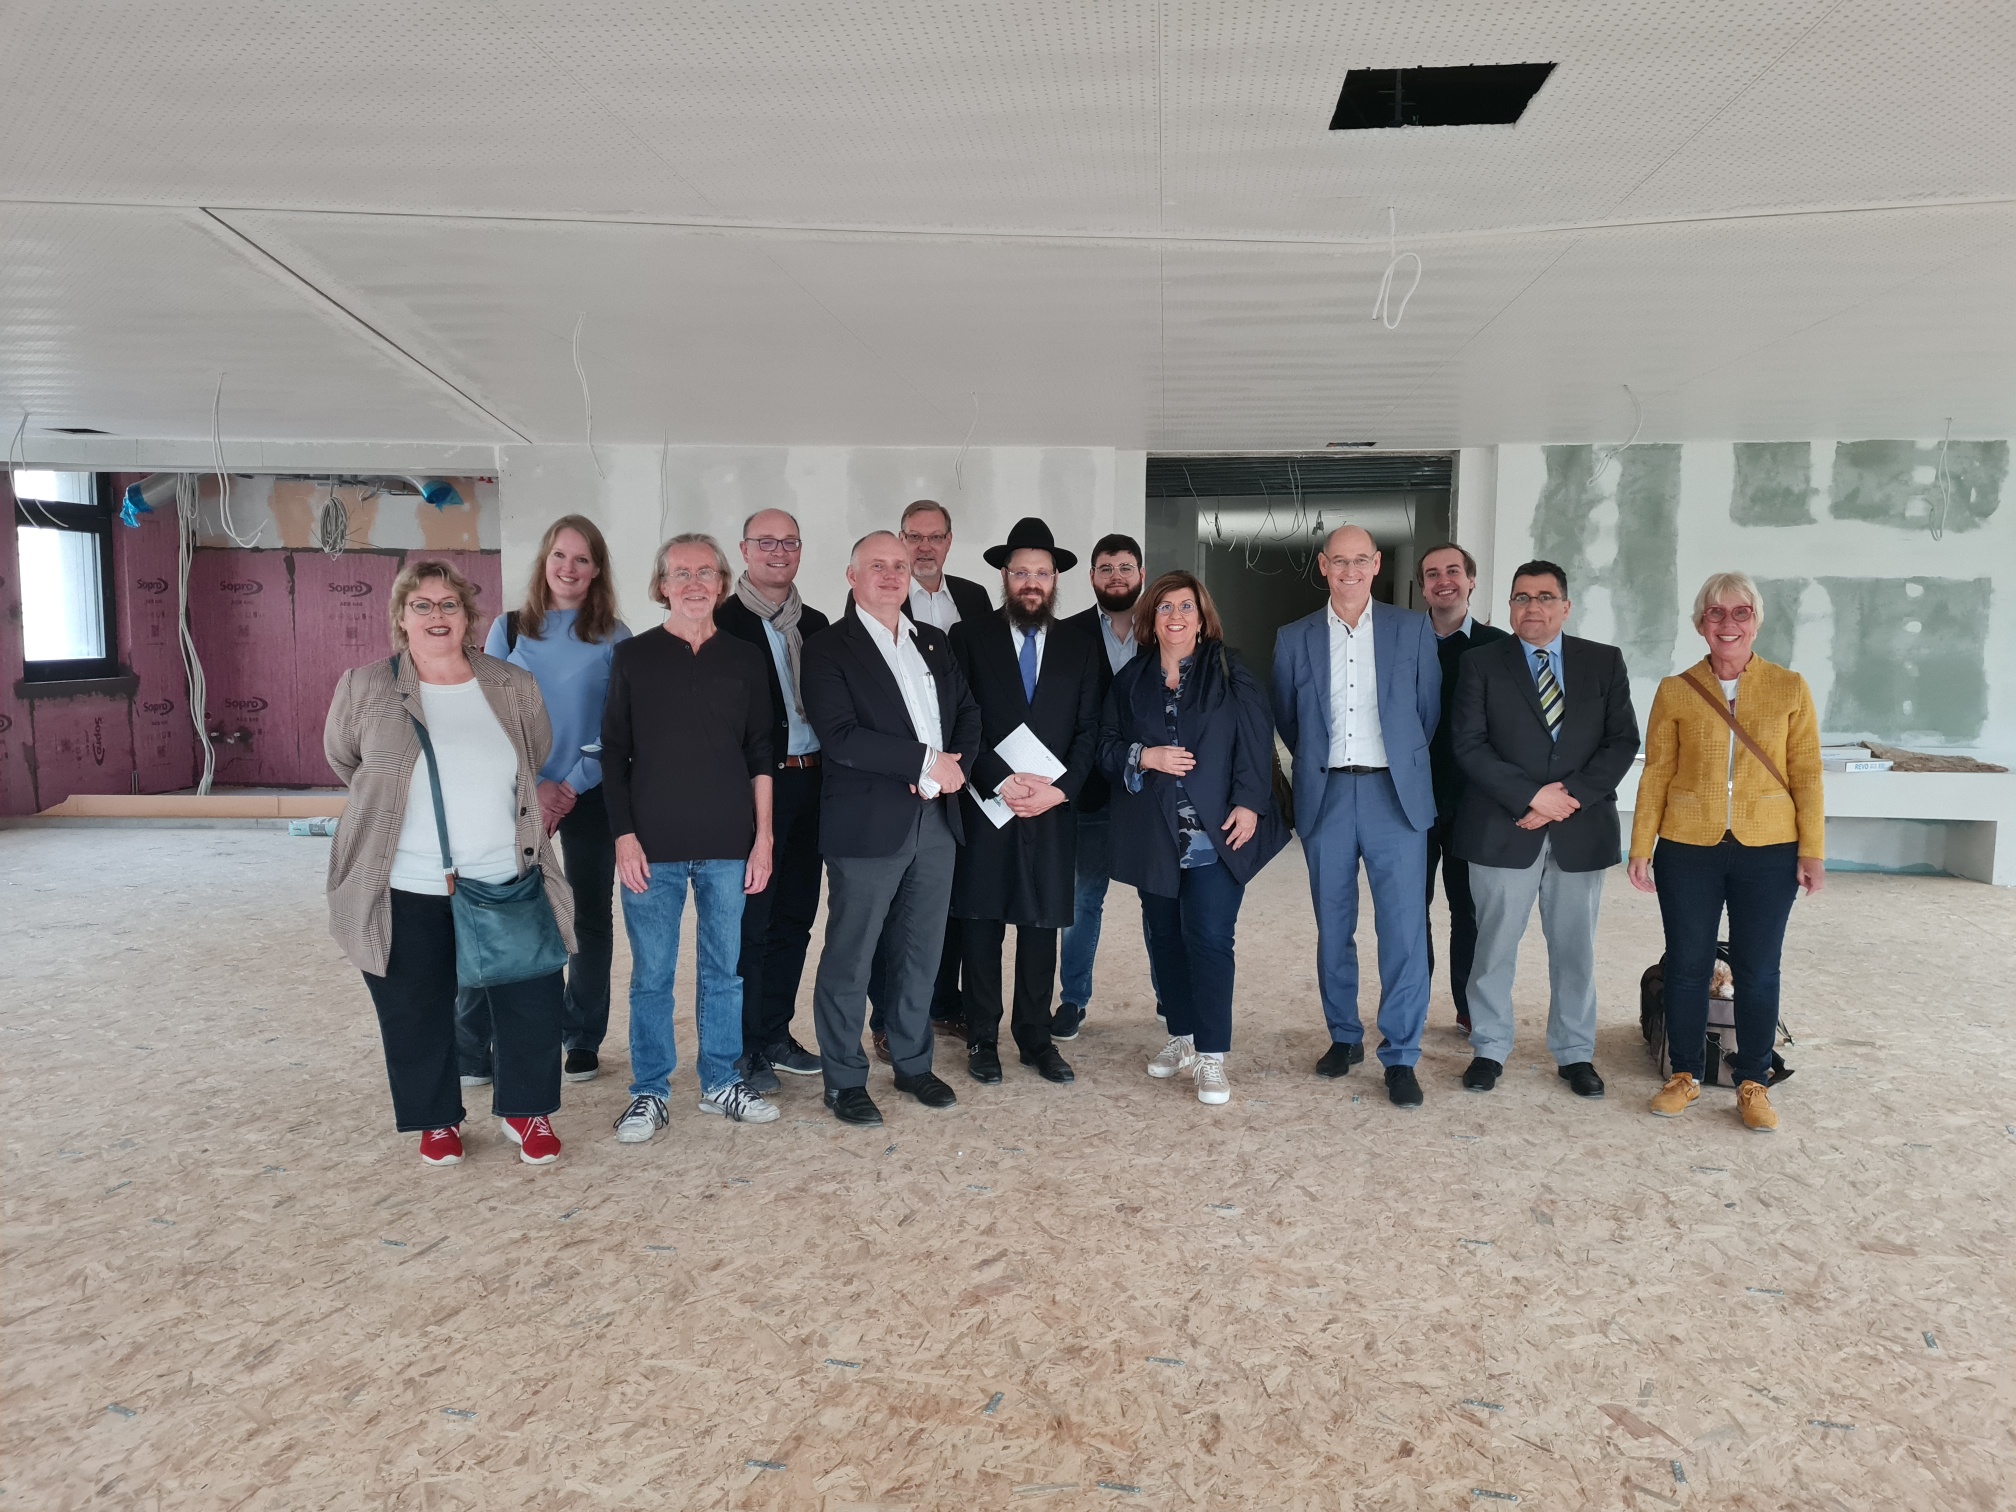 Mitglieder der CDU-Fraktion besuchten die Baustelle.
Bild: René Powilleit